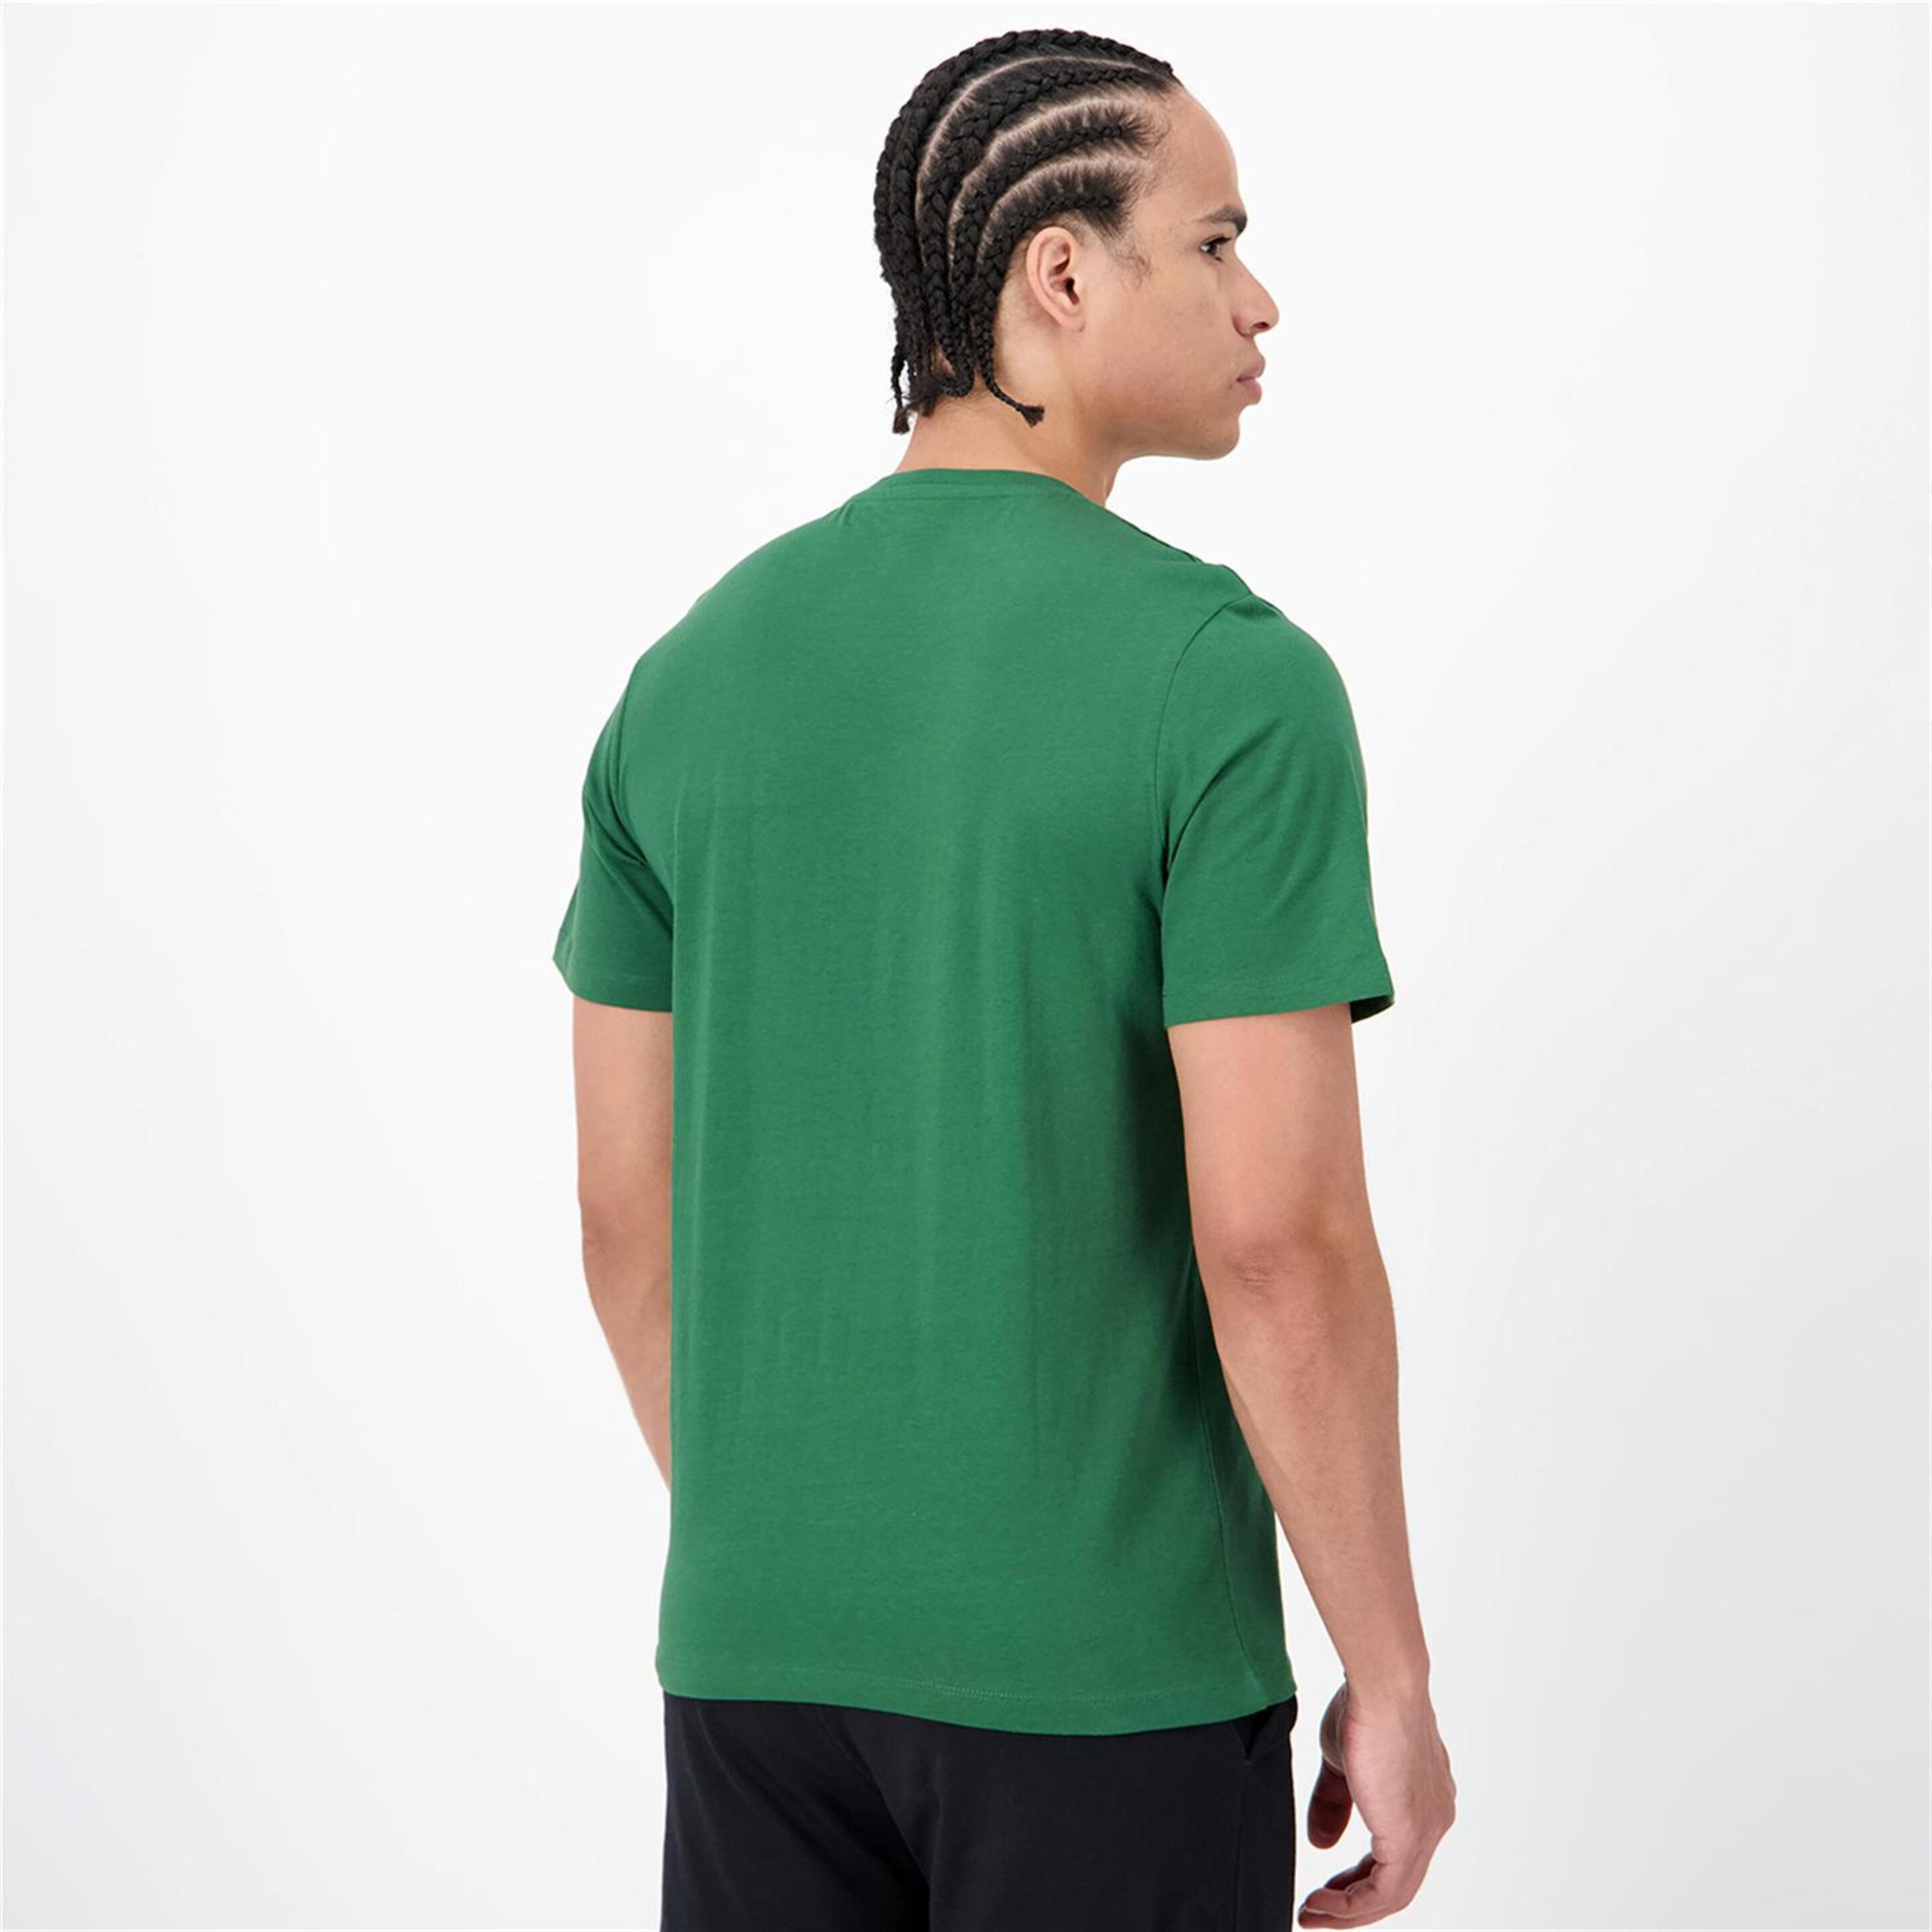 Jack & Jones Flint - Verde - Camiseta Hombre